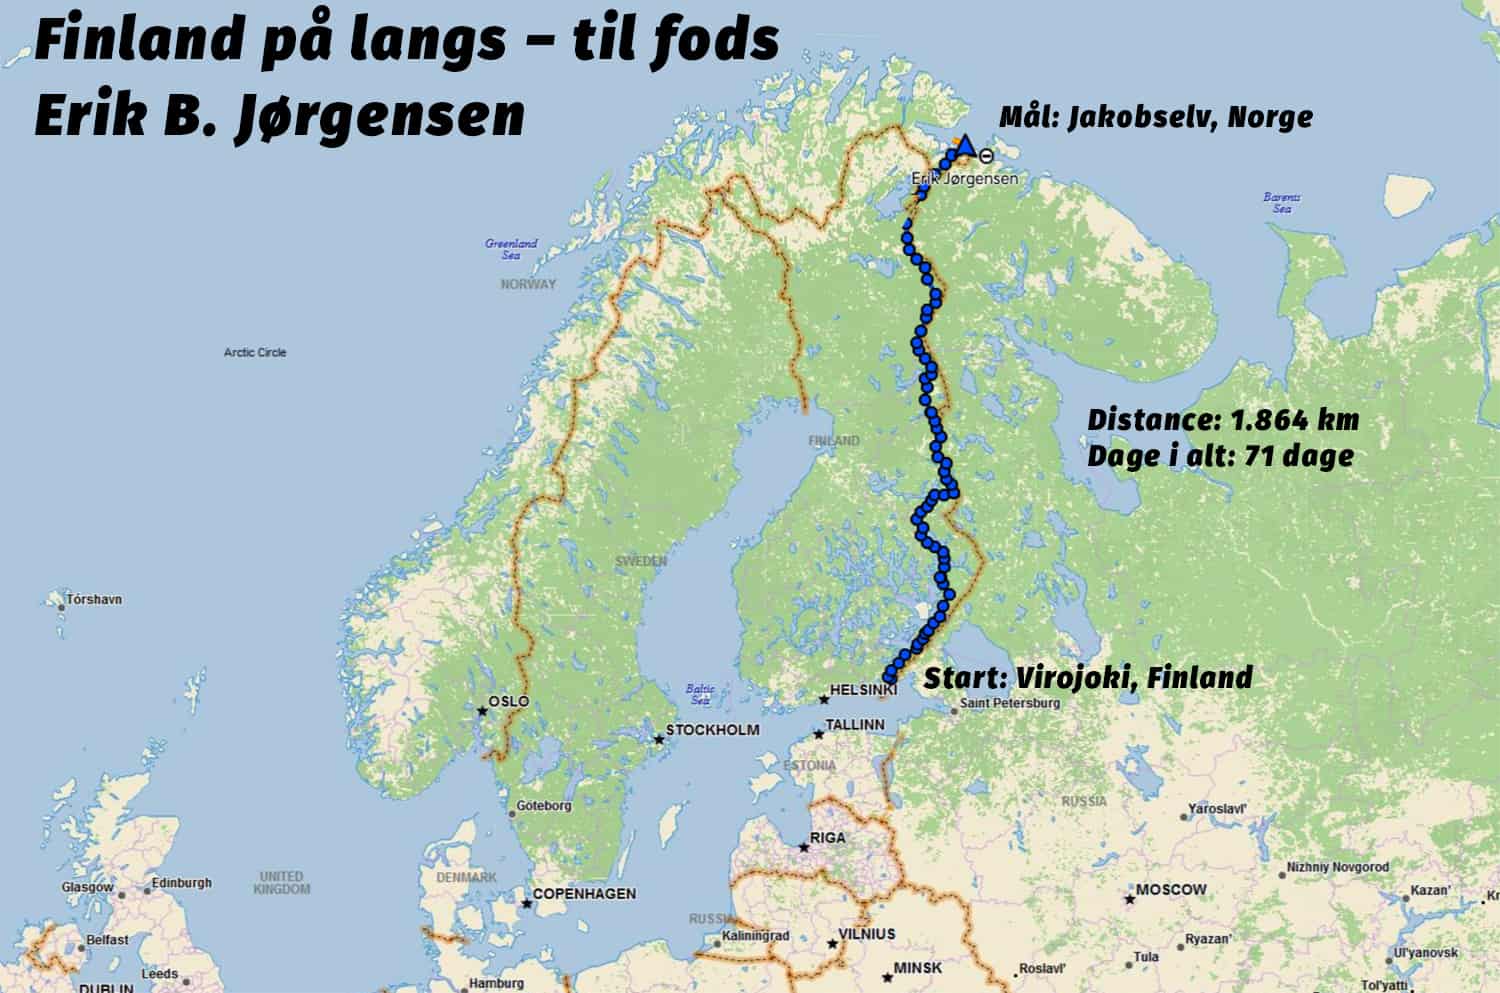 "Finland på langs – til fods" endelig rute, 1.864 km over 71 dage, af eventyrer Erik B. Jørgensen